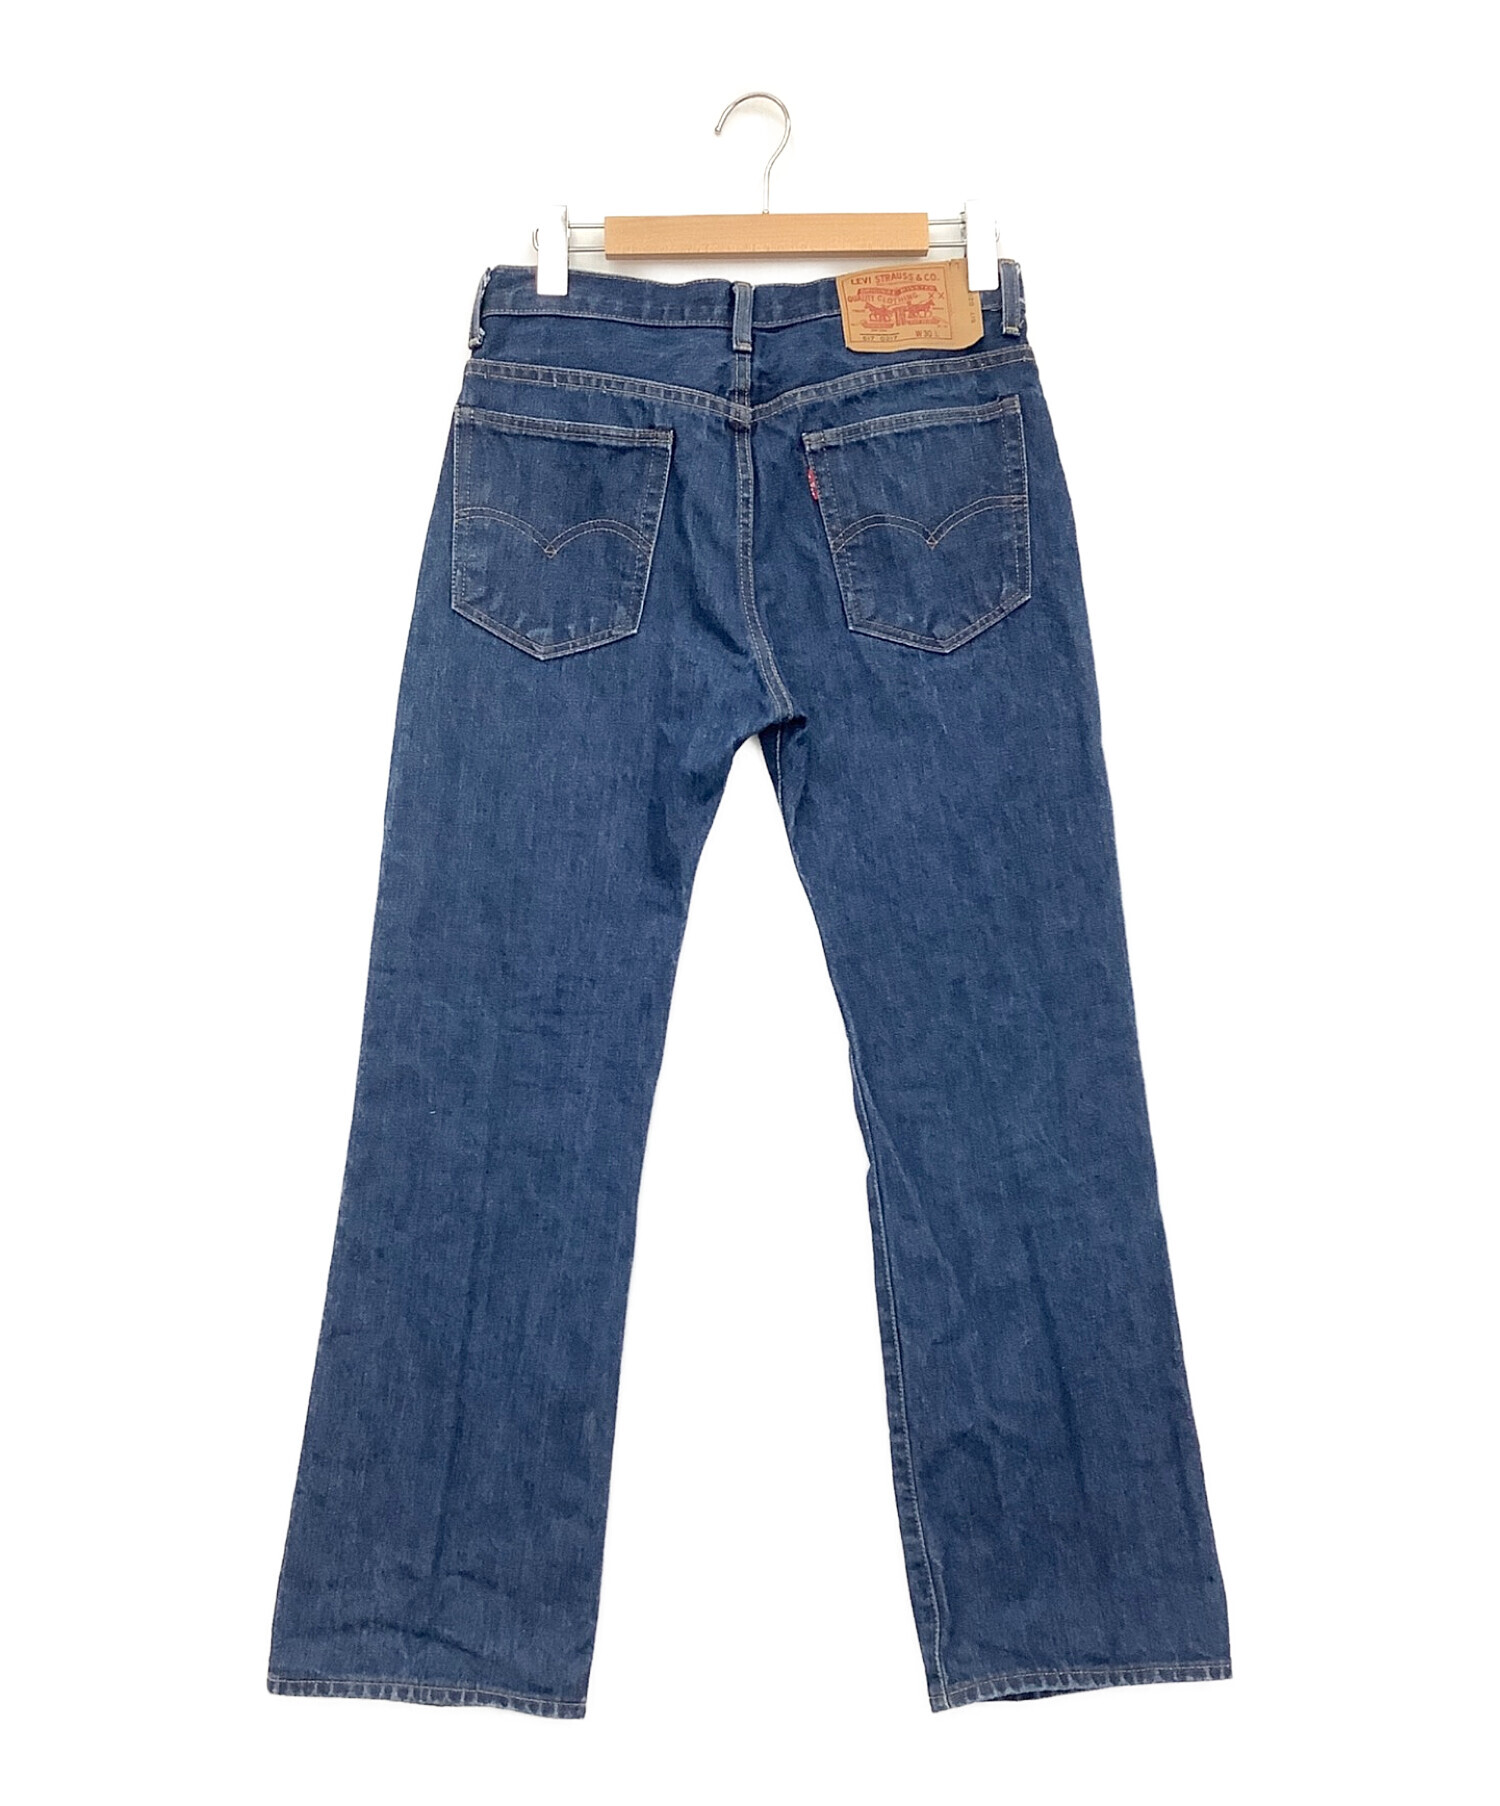 LEVI'S VINTAGE CLOTHING (リーバイスヴィンテージクロージング) デニムパンツ インディゴ サイズ:W30(76cm)